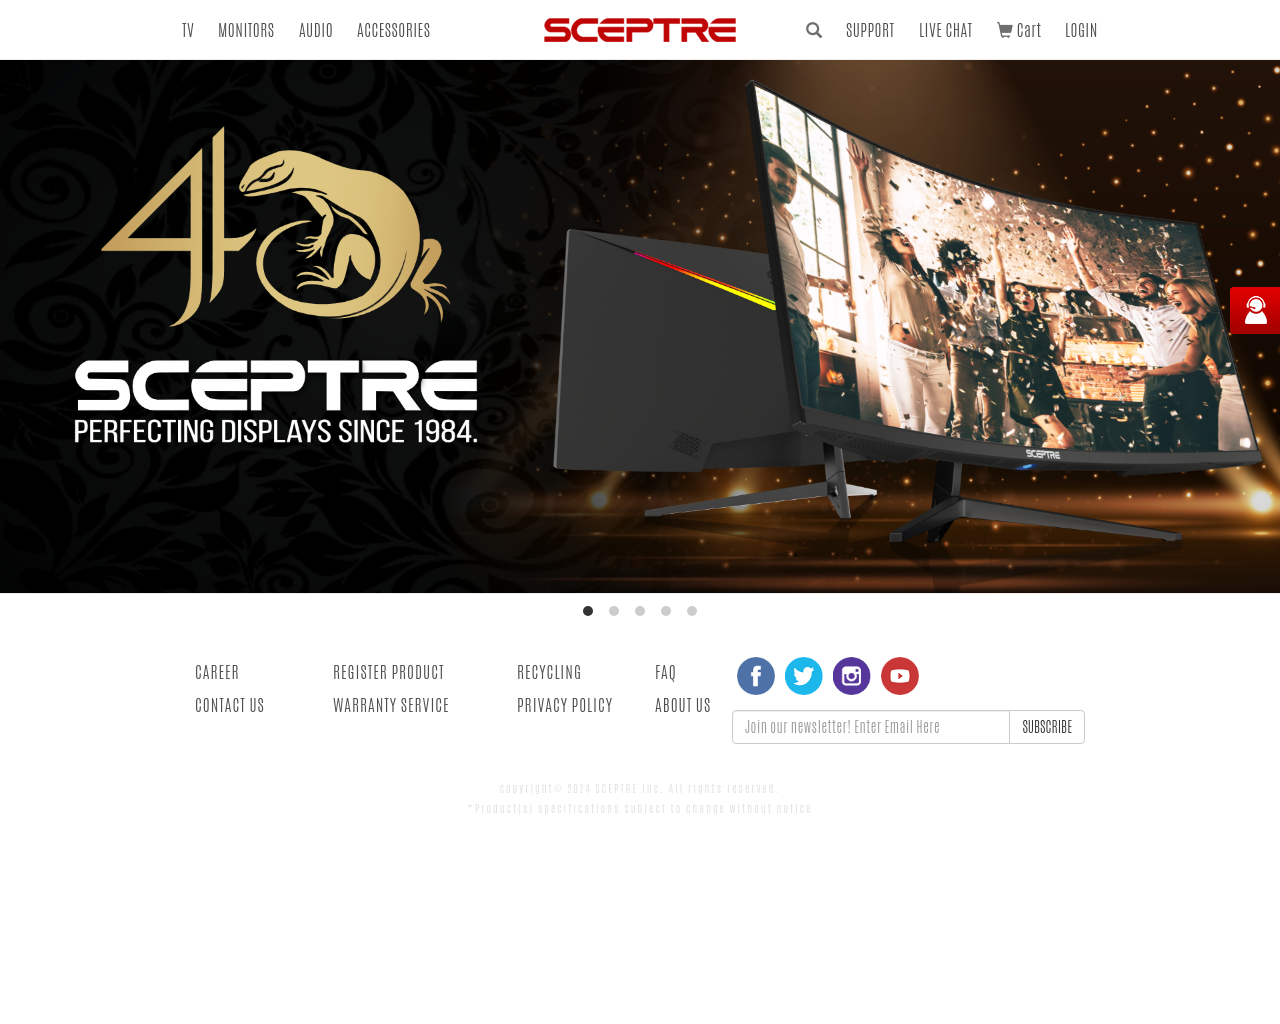 sceptre.com